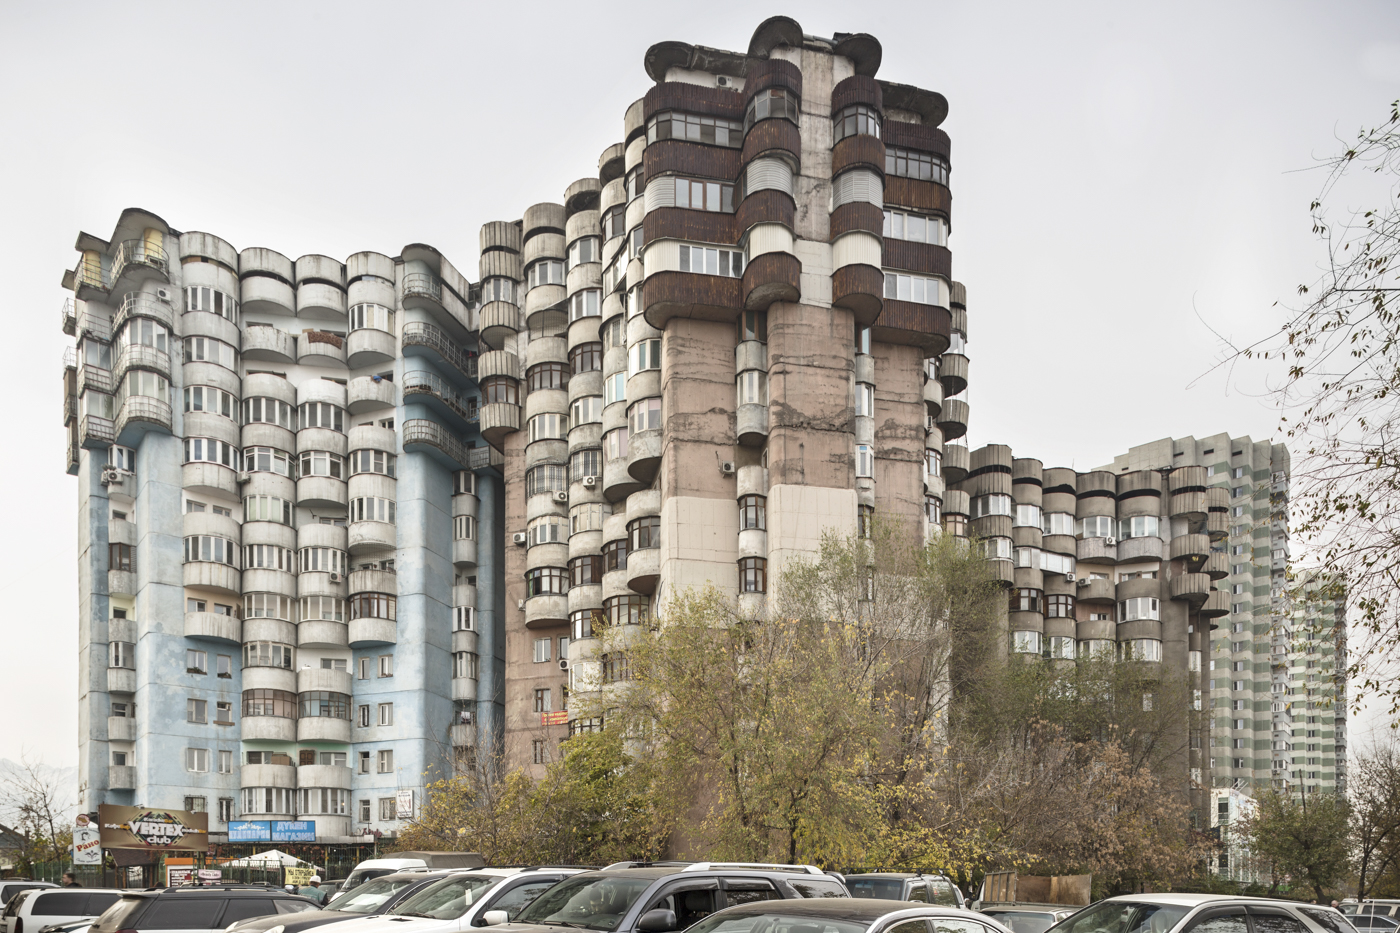 Aul housing complex, by B. Voronin, L. Andreyeva, Y. Ratushny, V. Lepeshov, and V. Vi (1986). Almaty, Kazakhstan. Photo: Roberto Conte